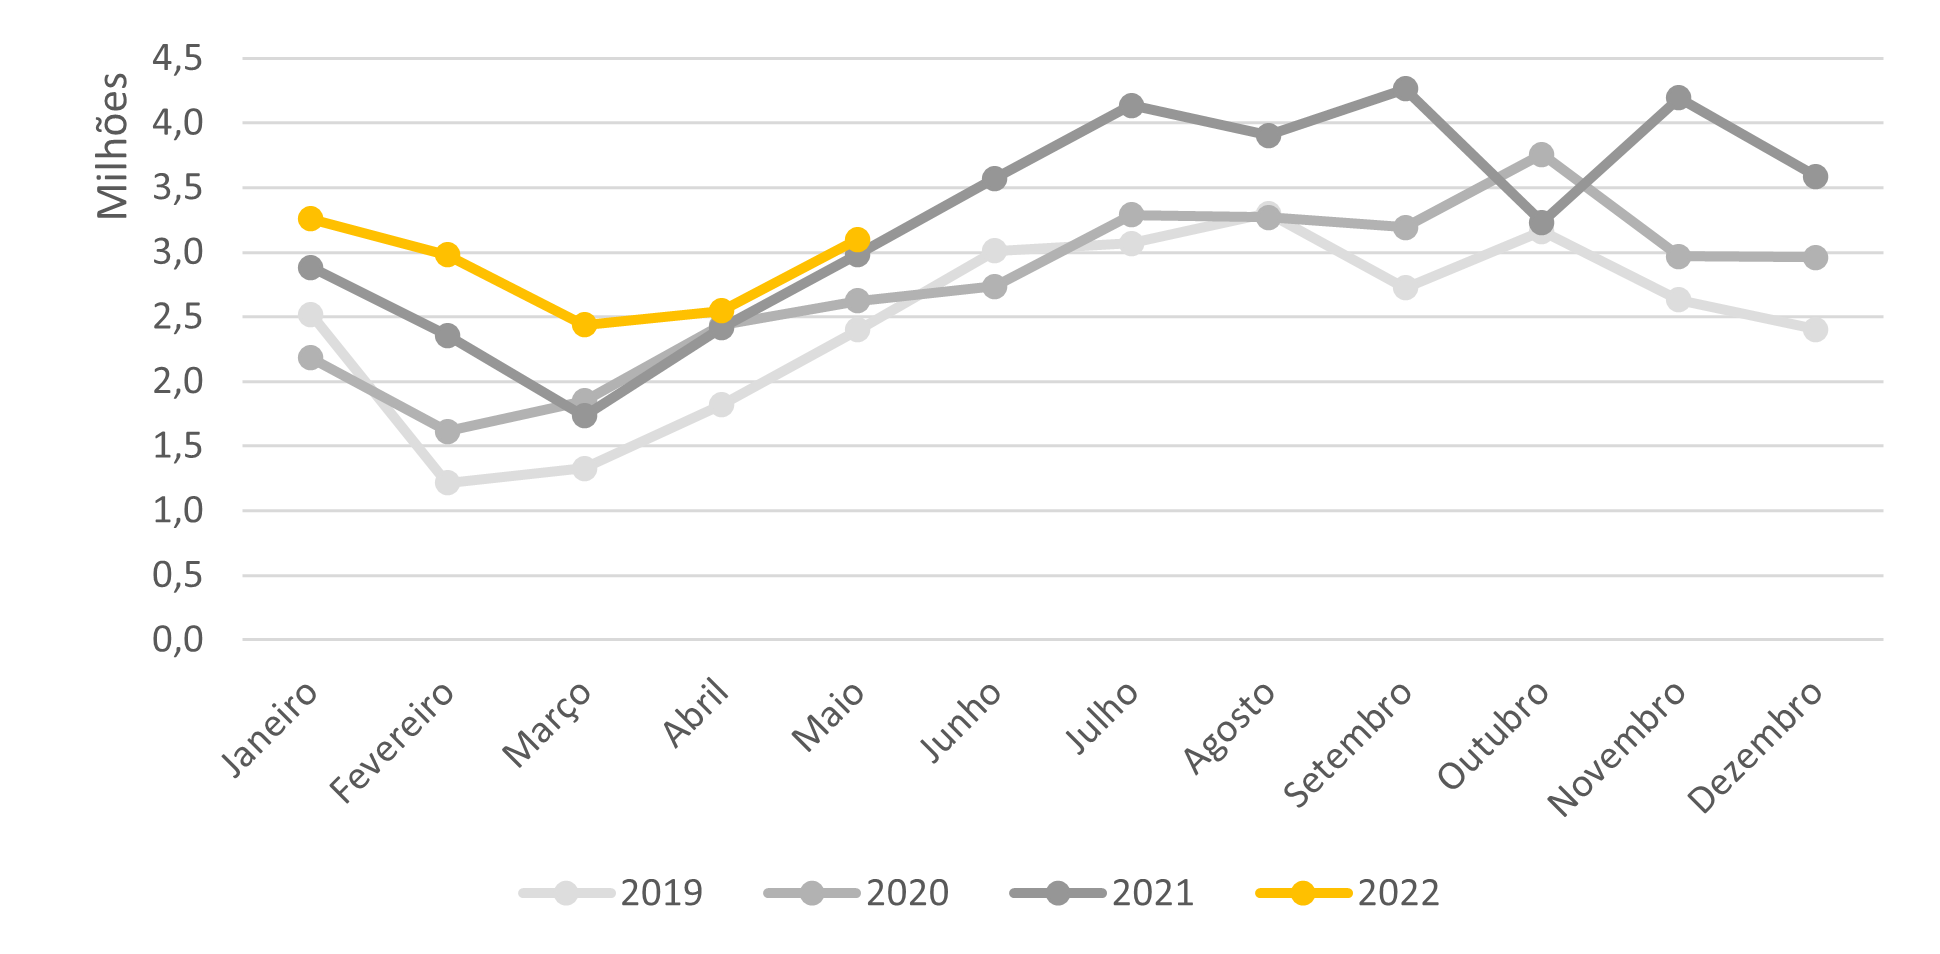 Volumes recorde de importação de fertilizantes nos cinco primeiros meses de 2022